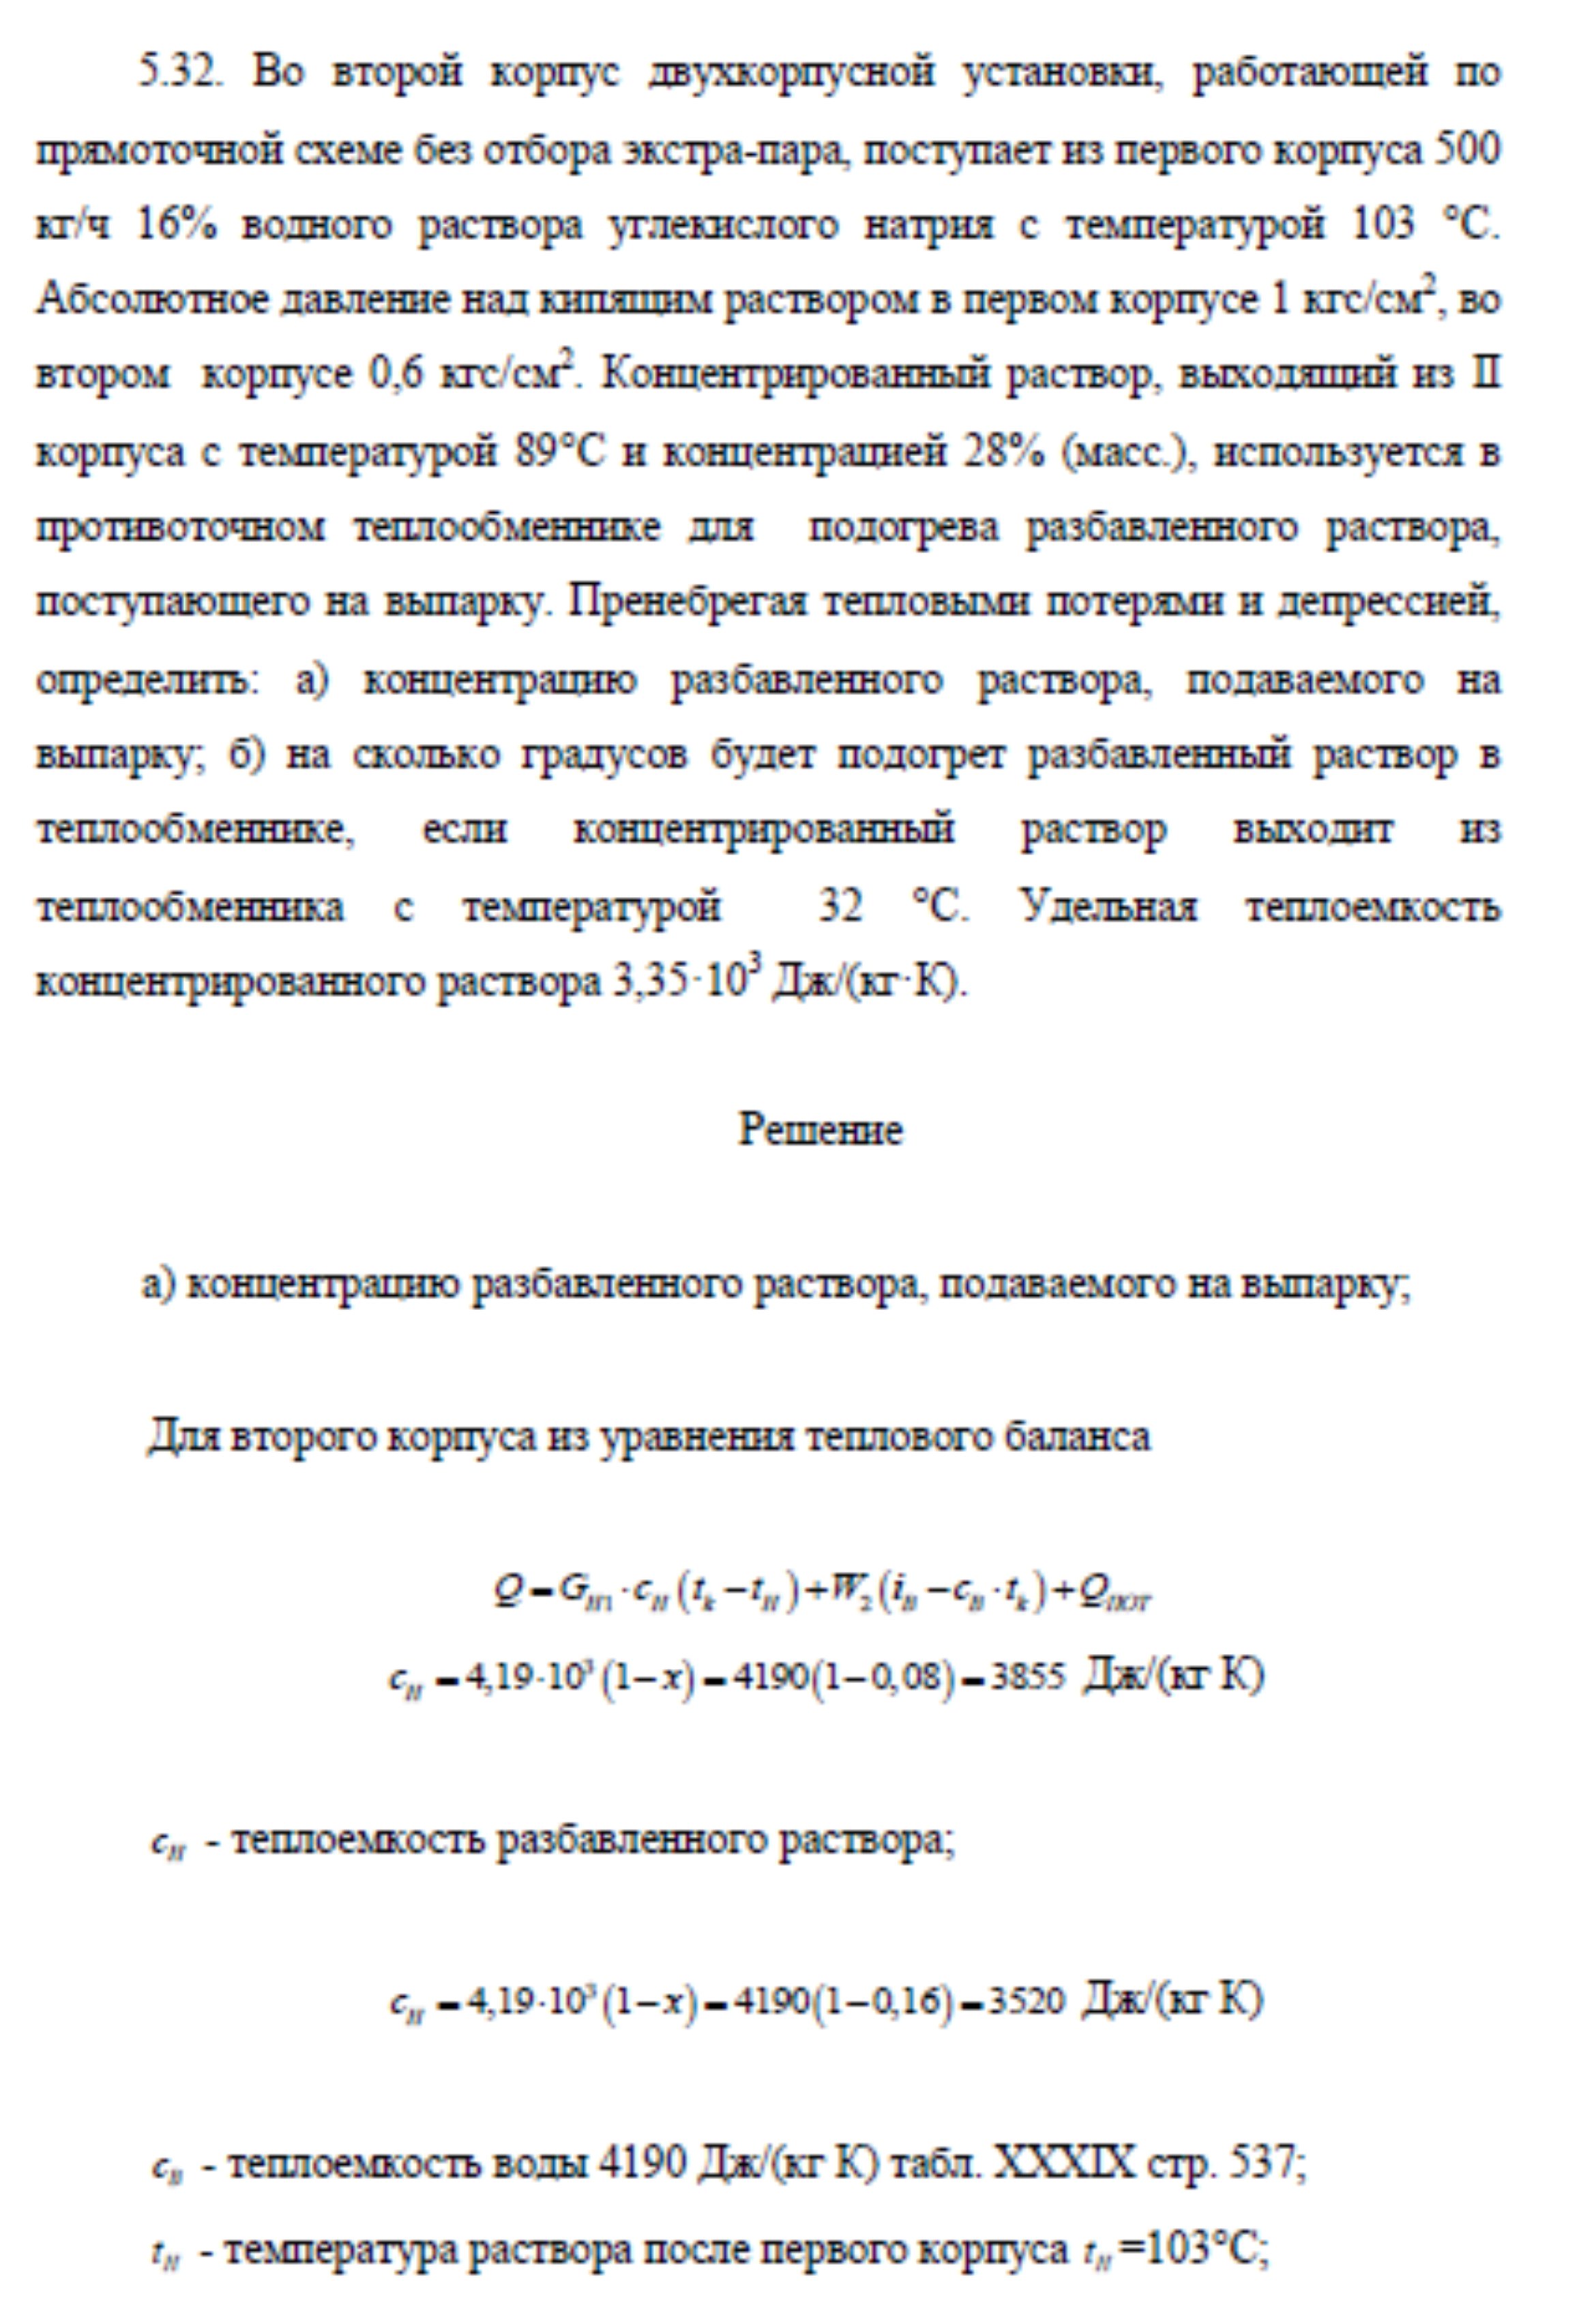 Решение задачи 5.32 по ПАХТ из задачника Павлова Романкова Носкова